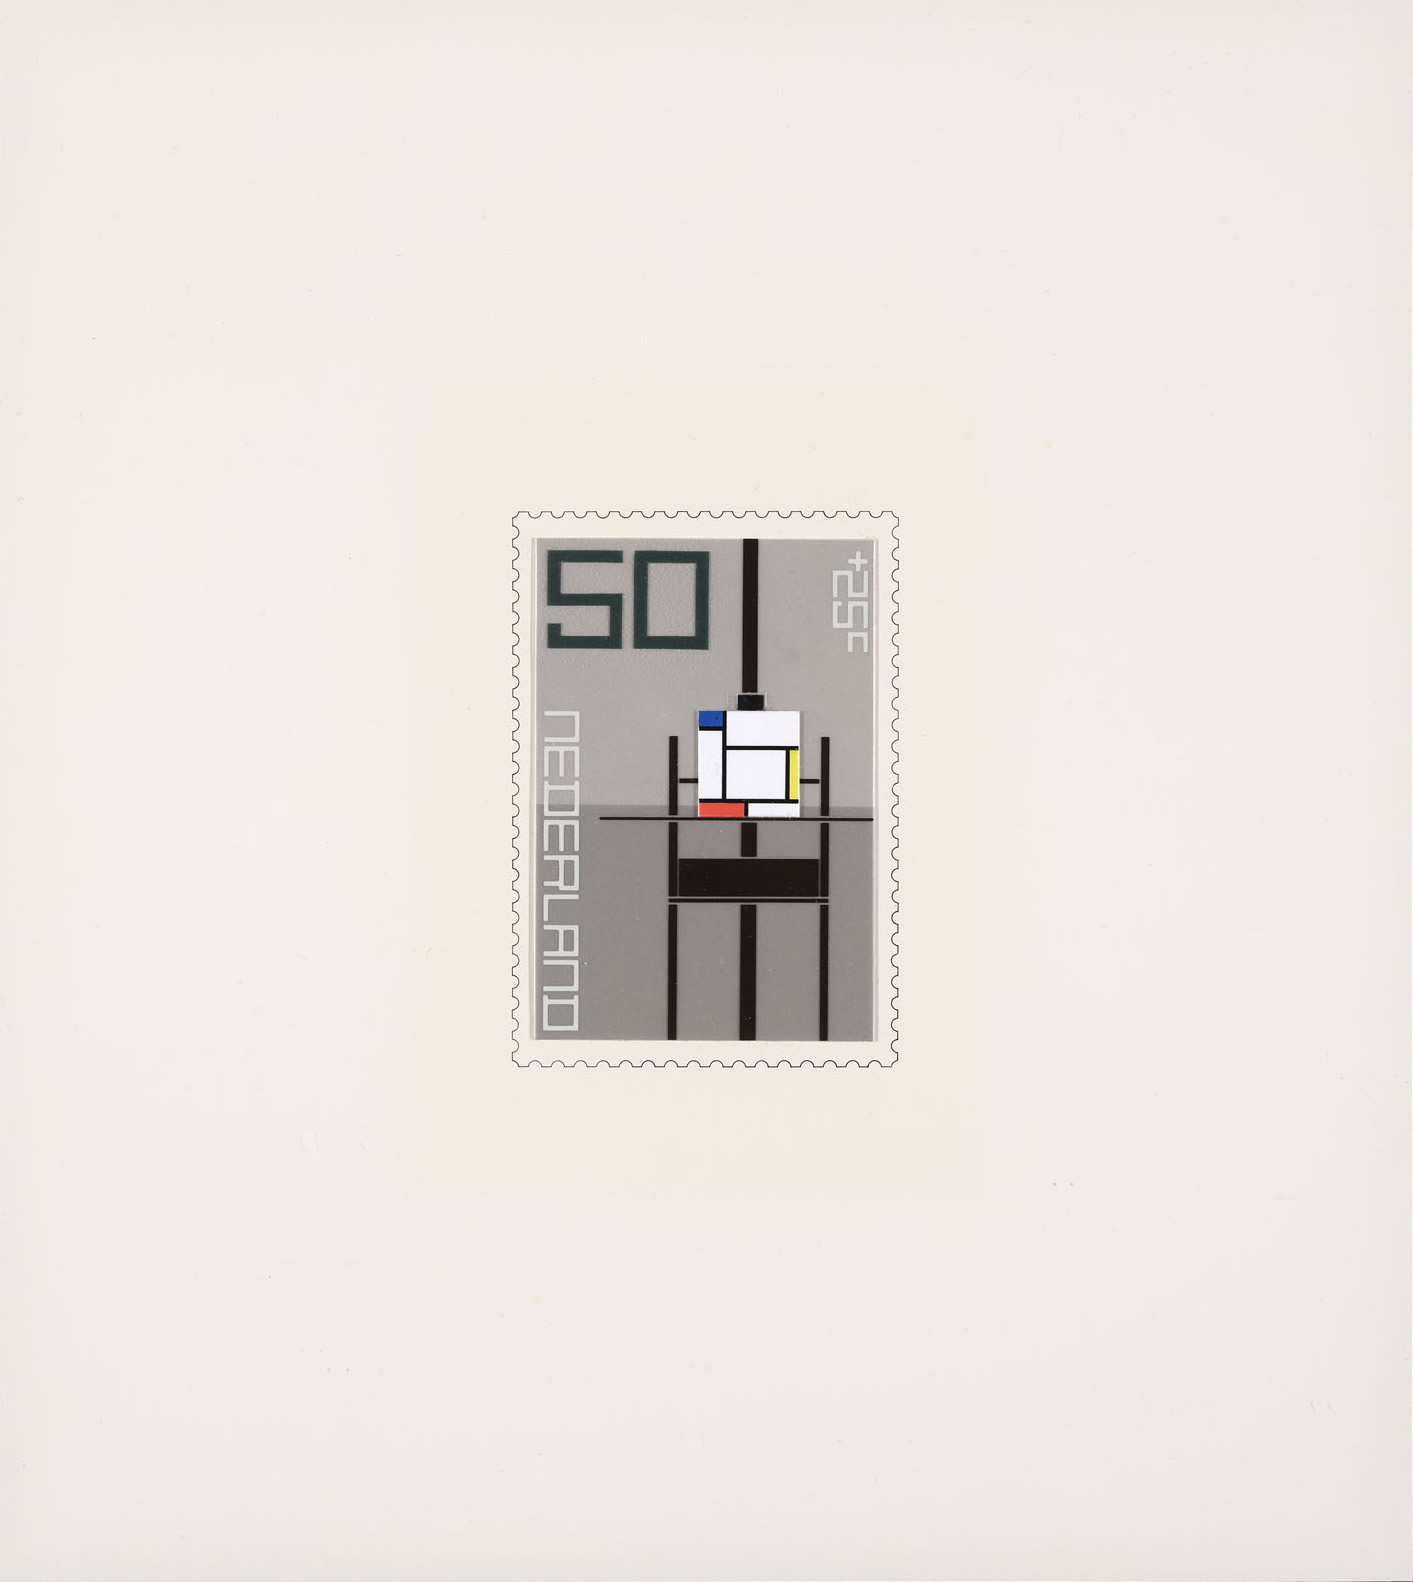 Wim Crouwel: First design for postage stamps Netherlands 1983. De Stijl Painting: Mondriaan. 1982